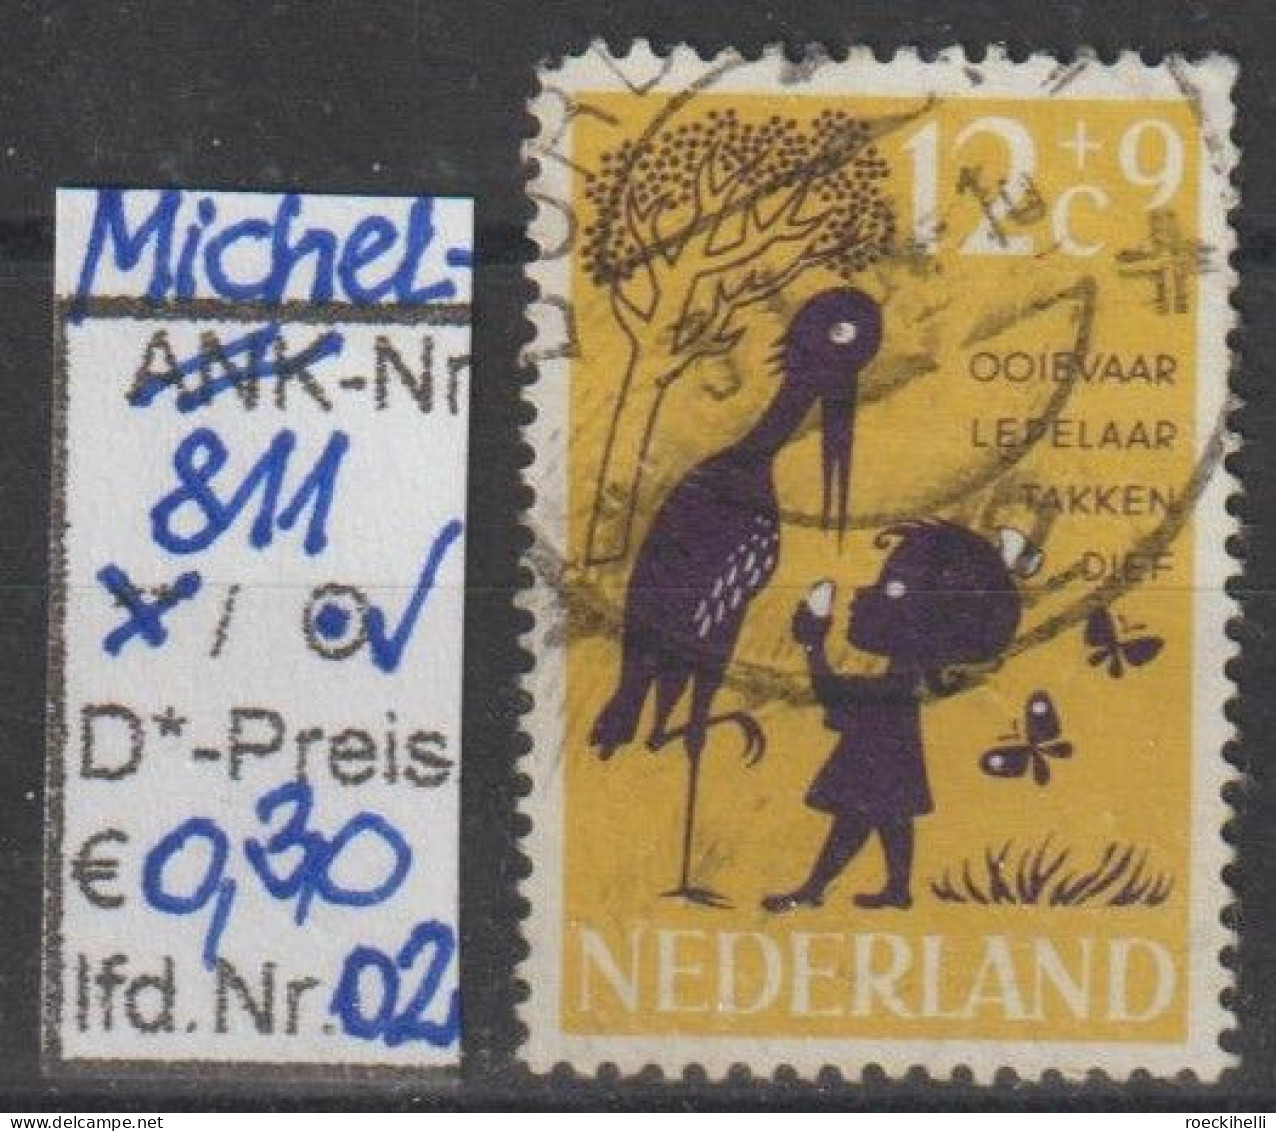 1963 - NIEDERLANDE - SM "Voor Het Kind" 12C+9C Gelb/violett  - O  Gestempelt - S. Scan (811o 01-02 Nl) - Gebruikt